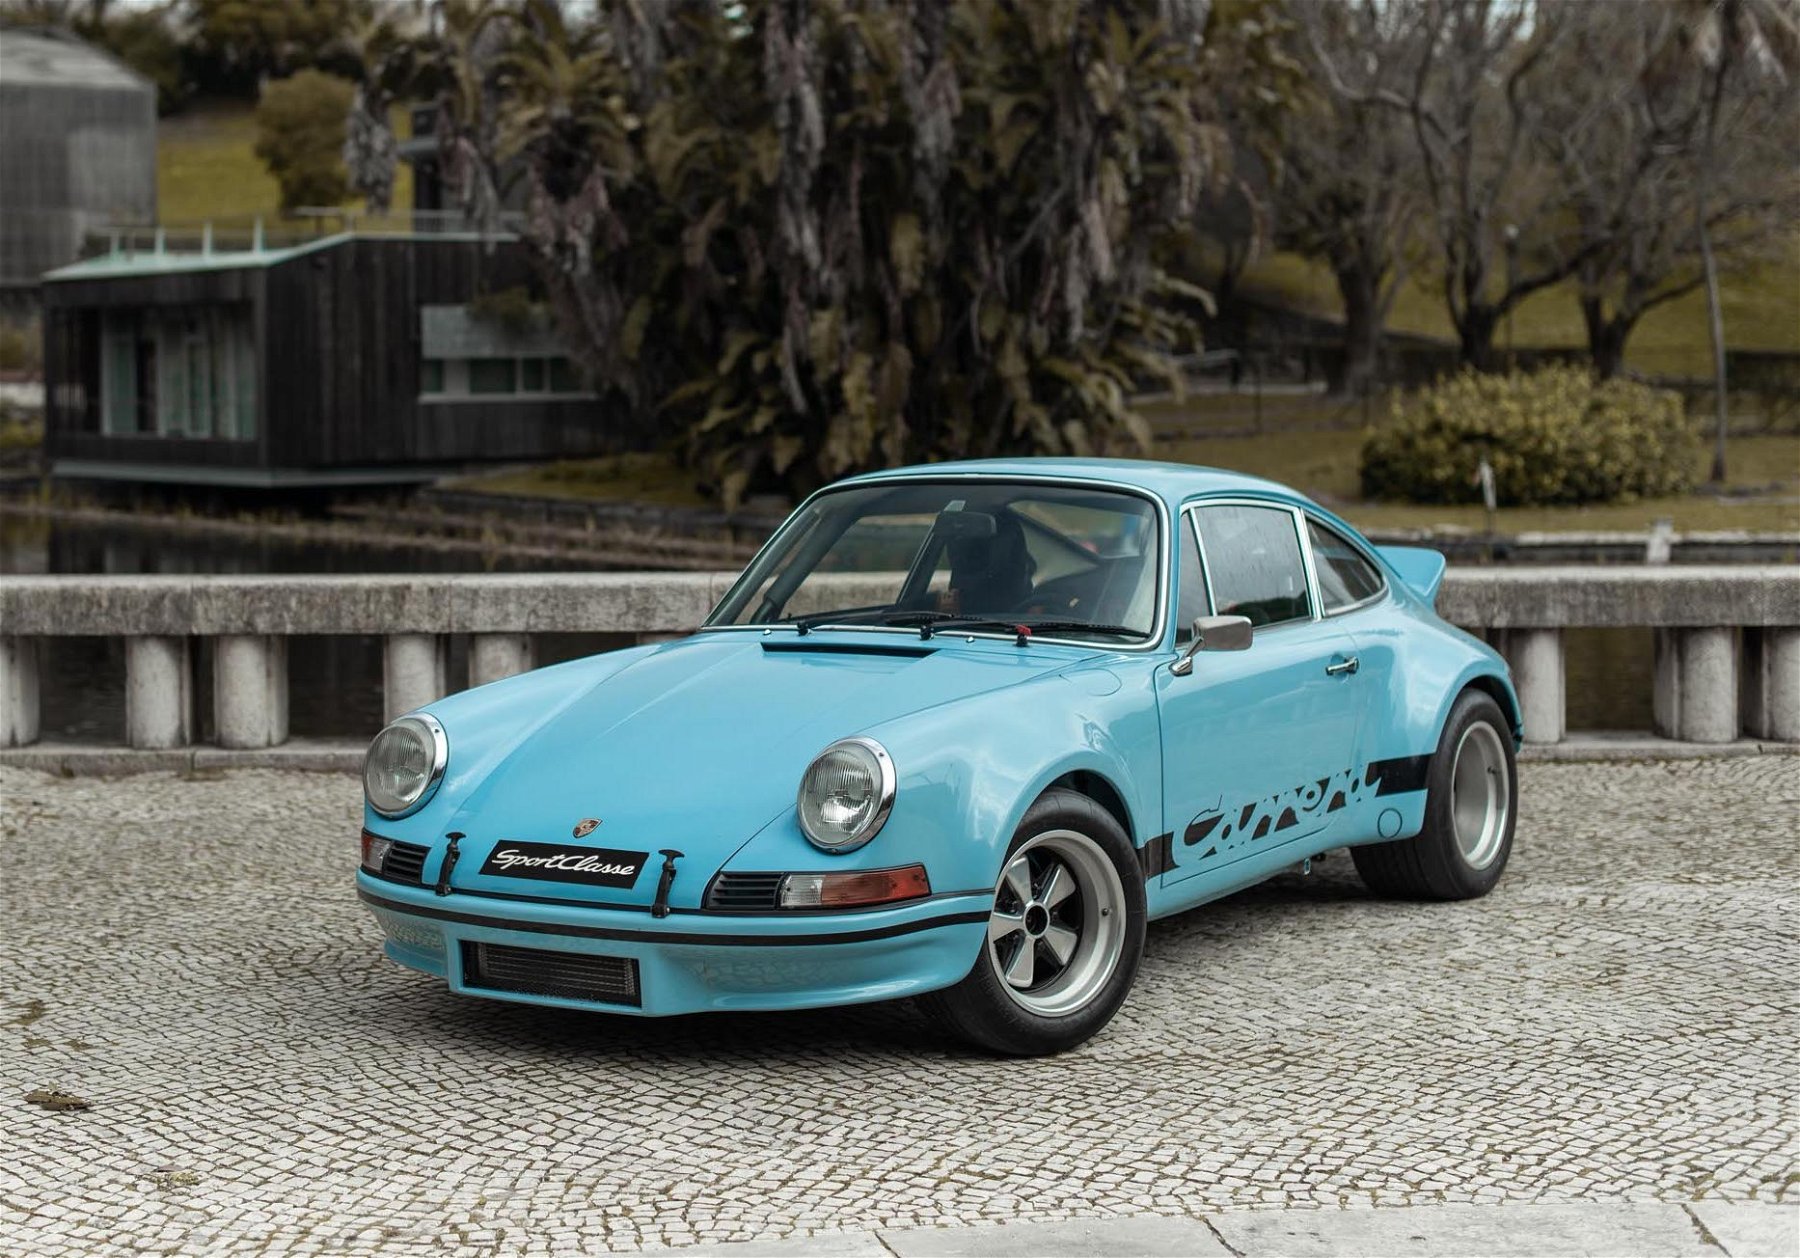 1973 Porsche 911 for sale